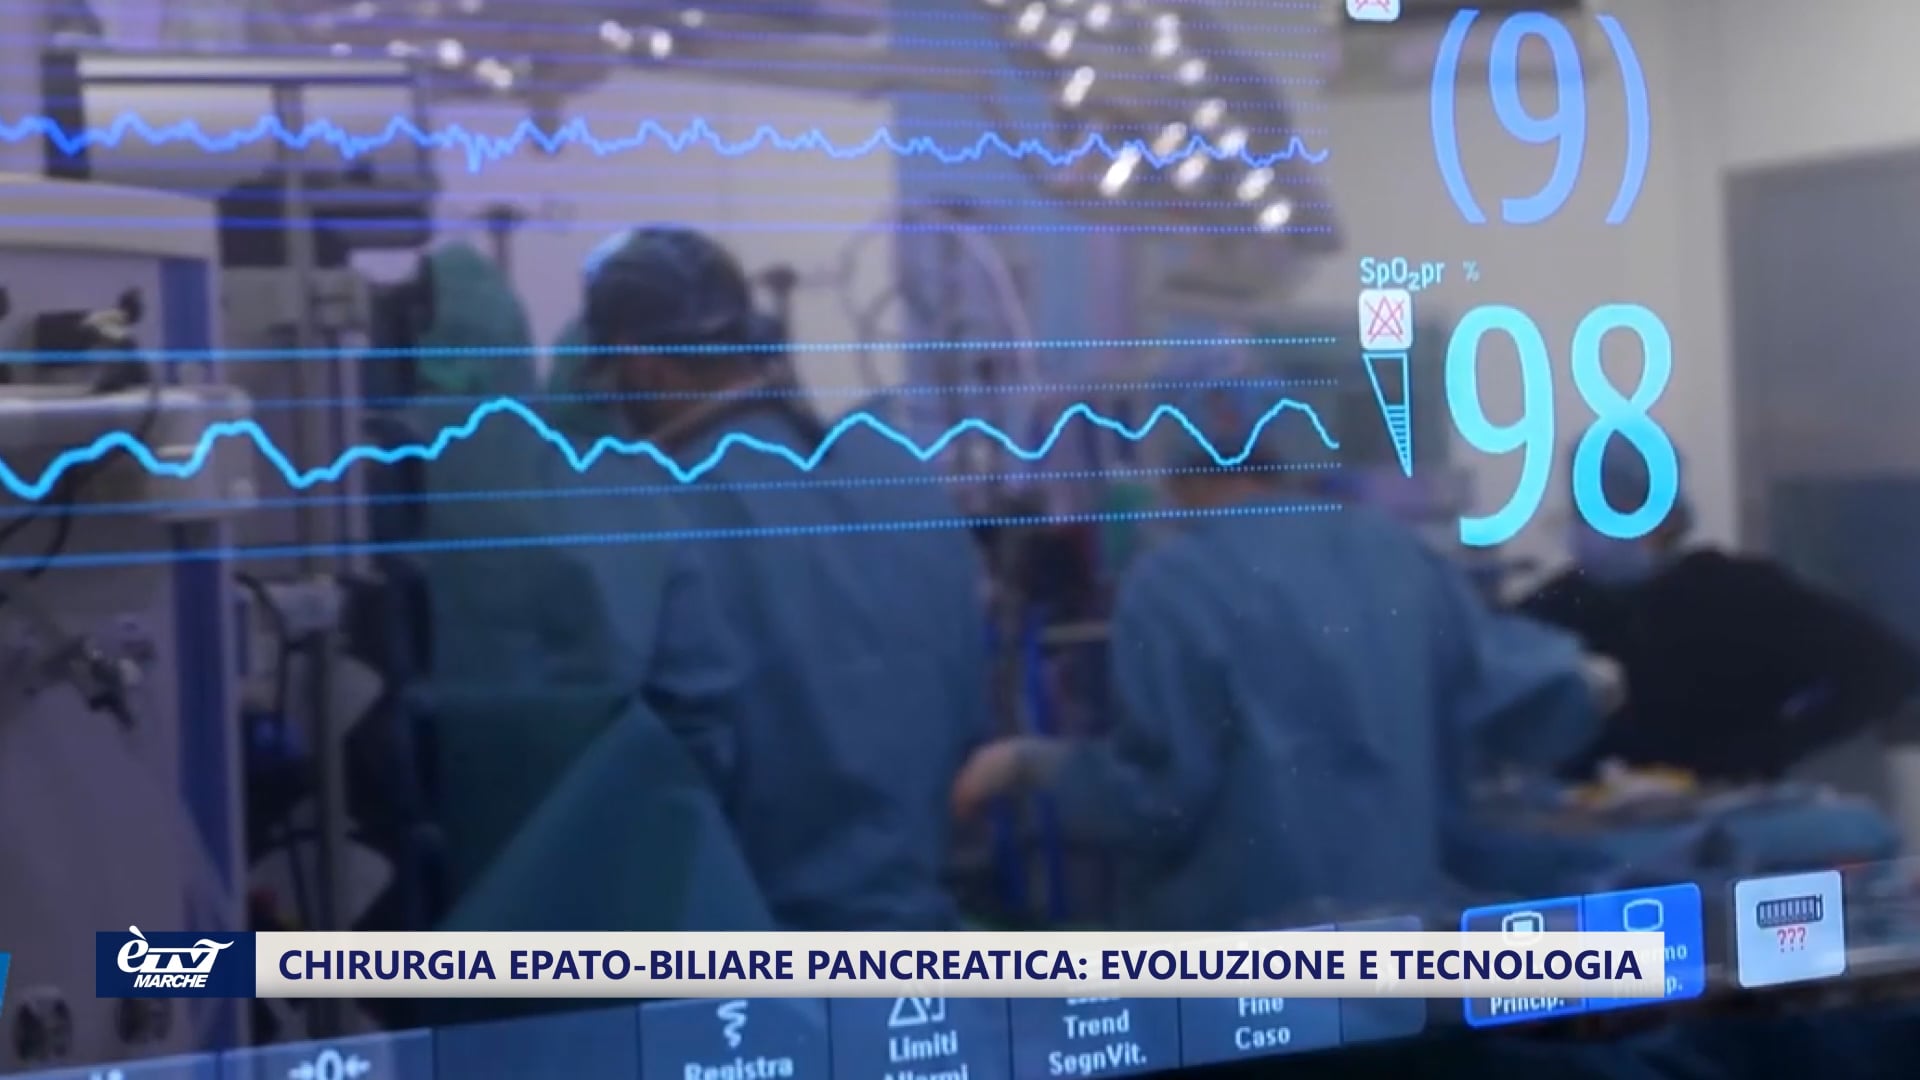 Chirurgia epato-biliare pancreatica: evoluzione e tecnologia - VIDEO